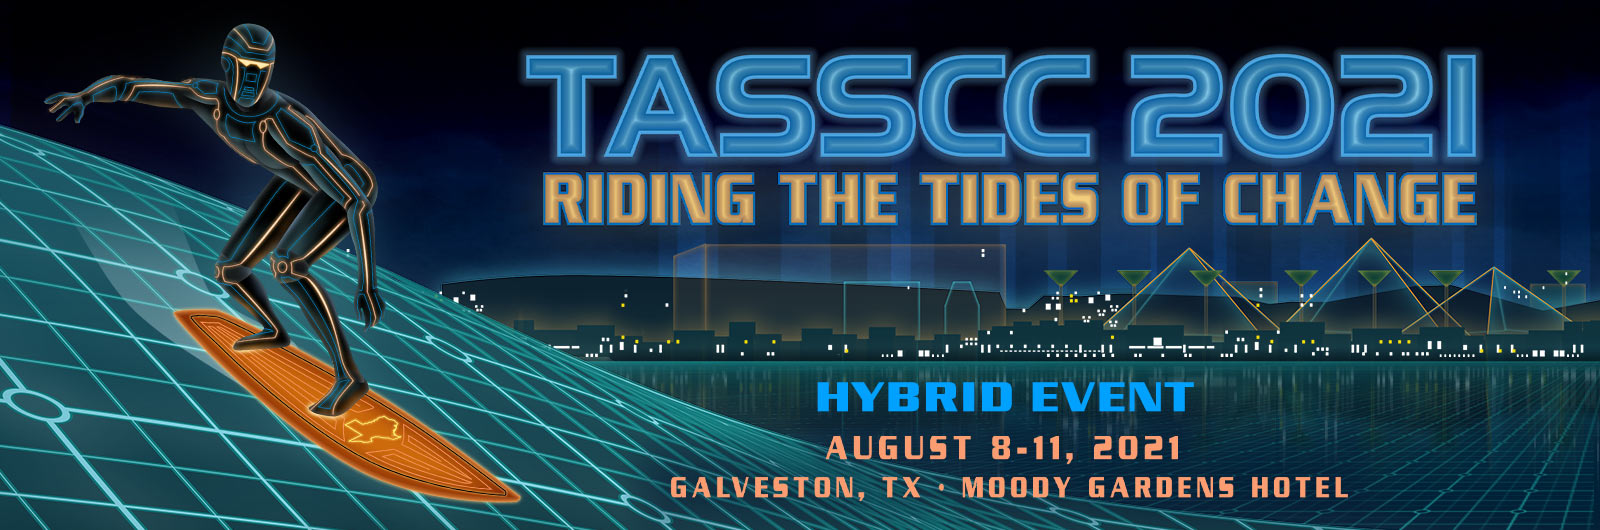 TASSCC Annual Conference